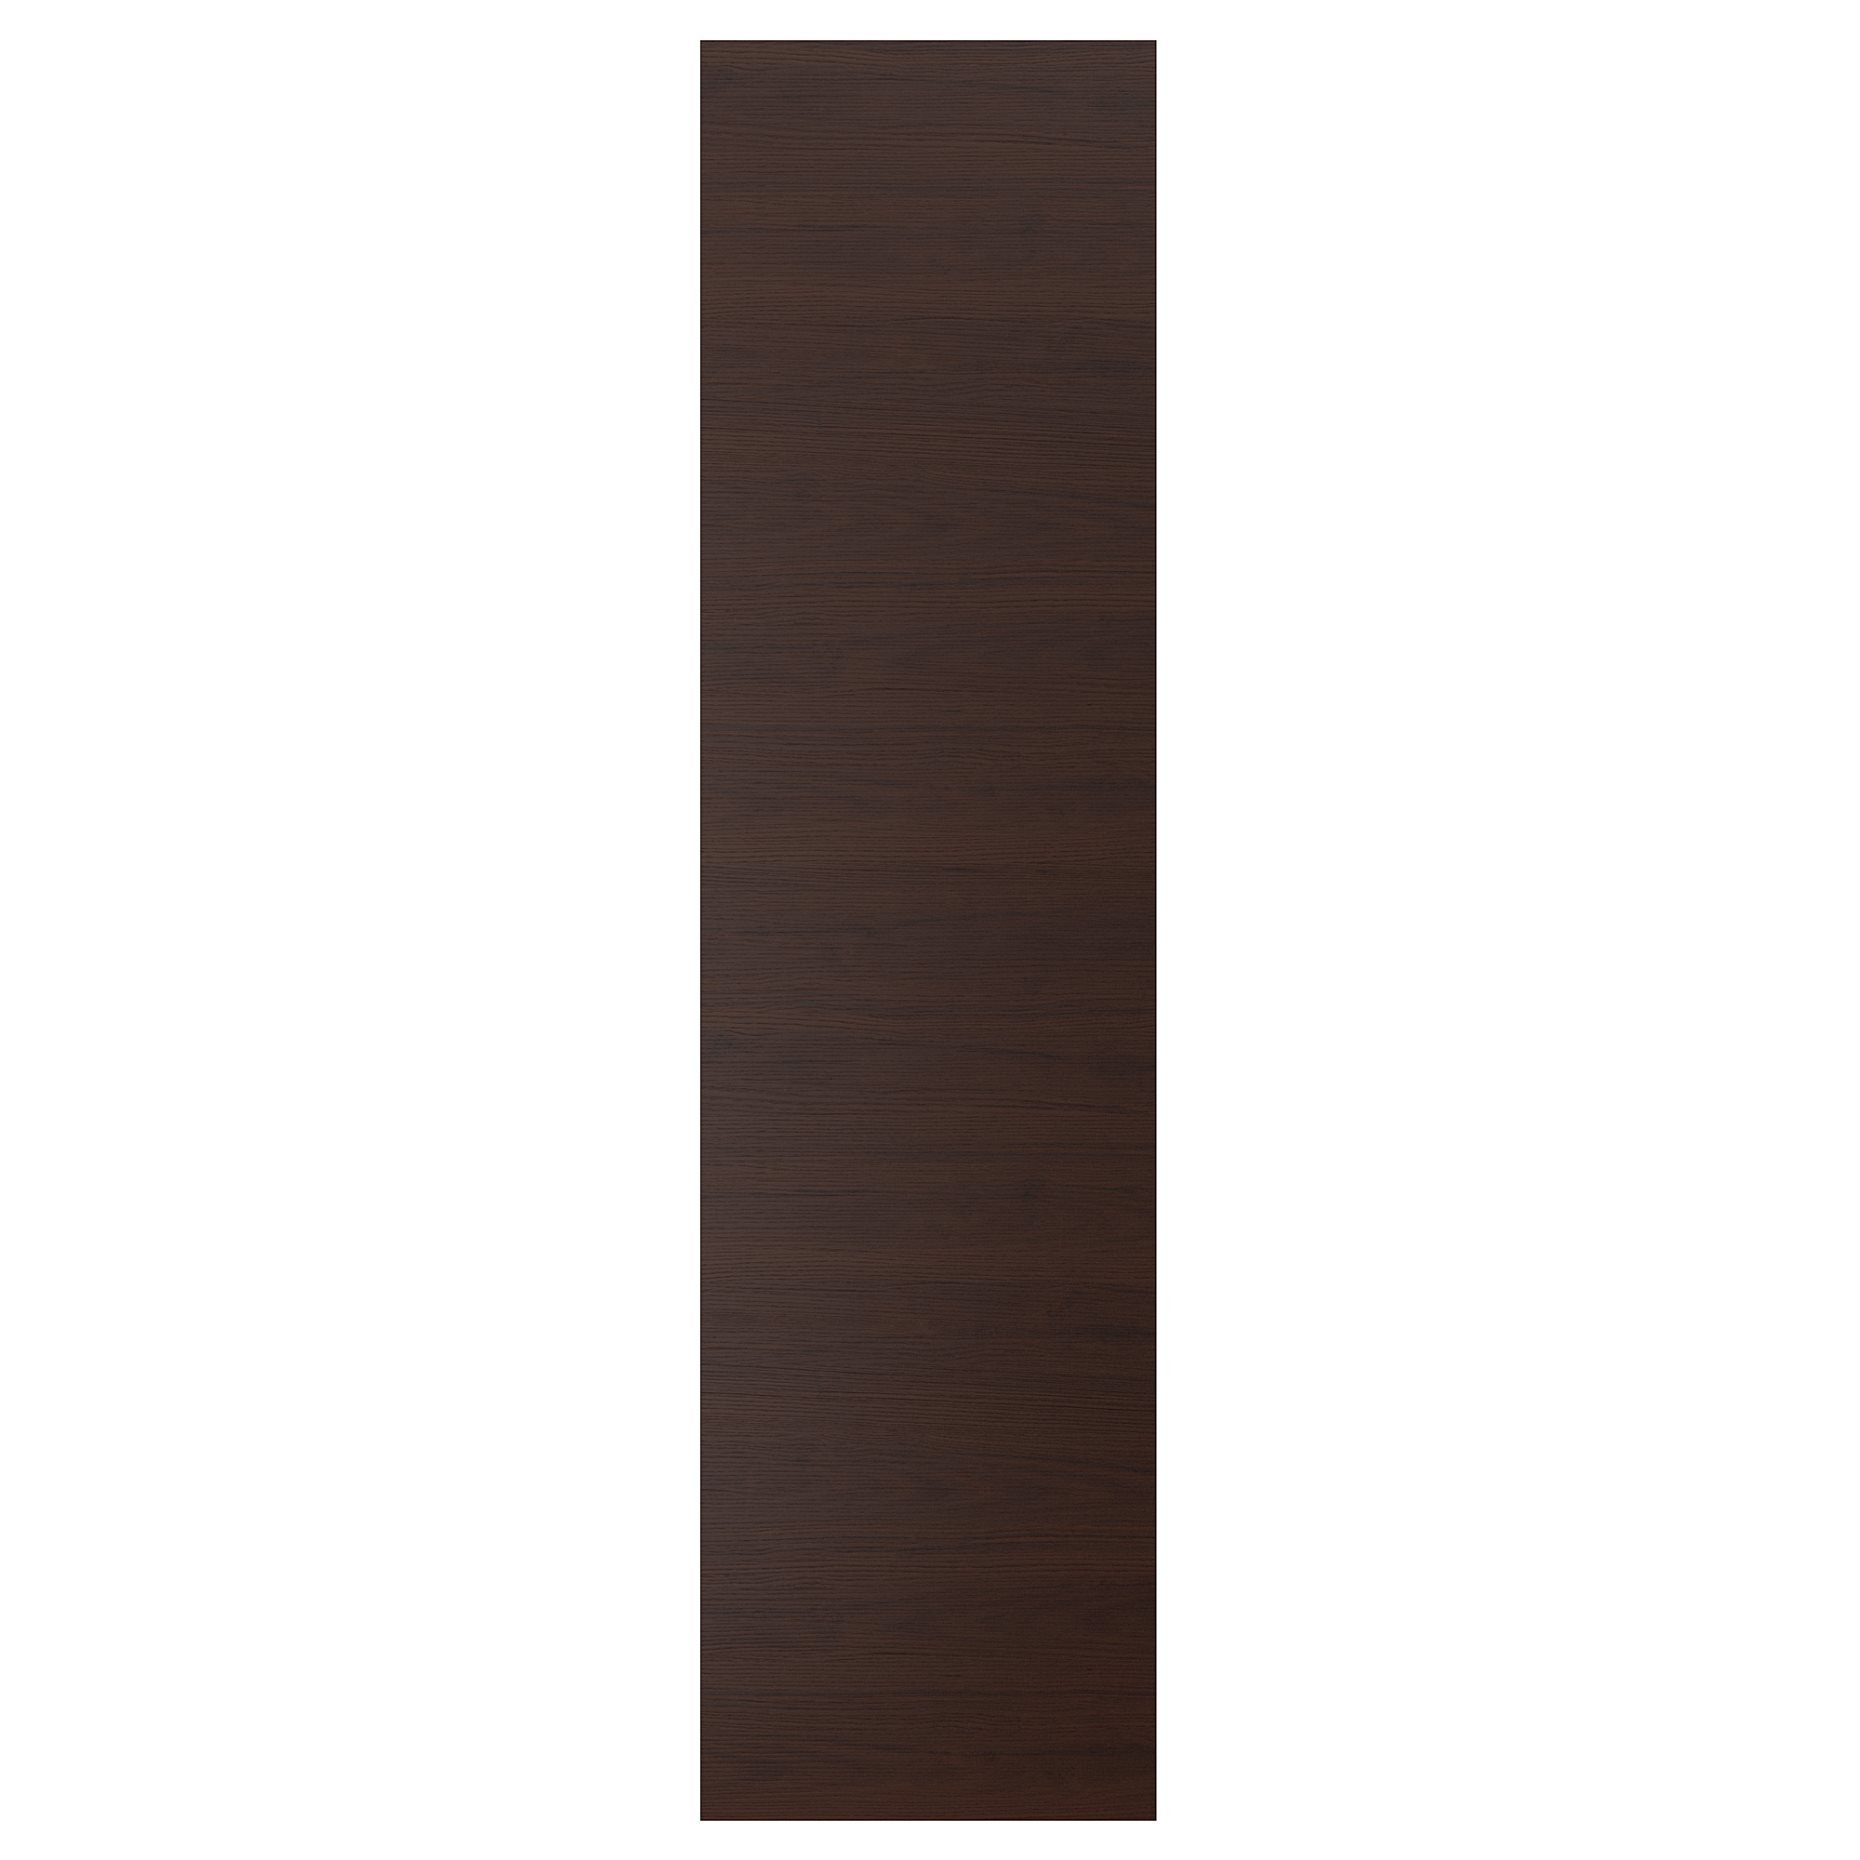 ASKERSUND, πλαϊνή επιφάνεια, 62x240 cm, 204.252.34